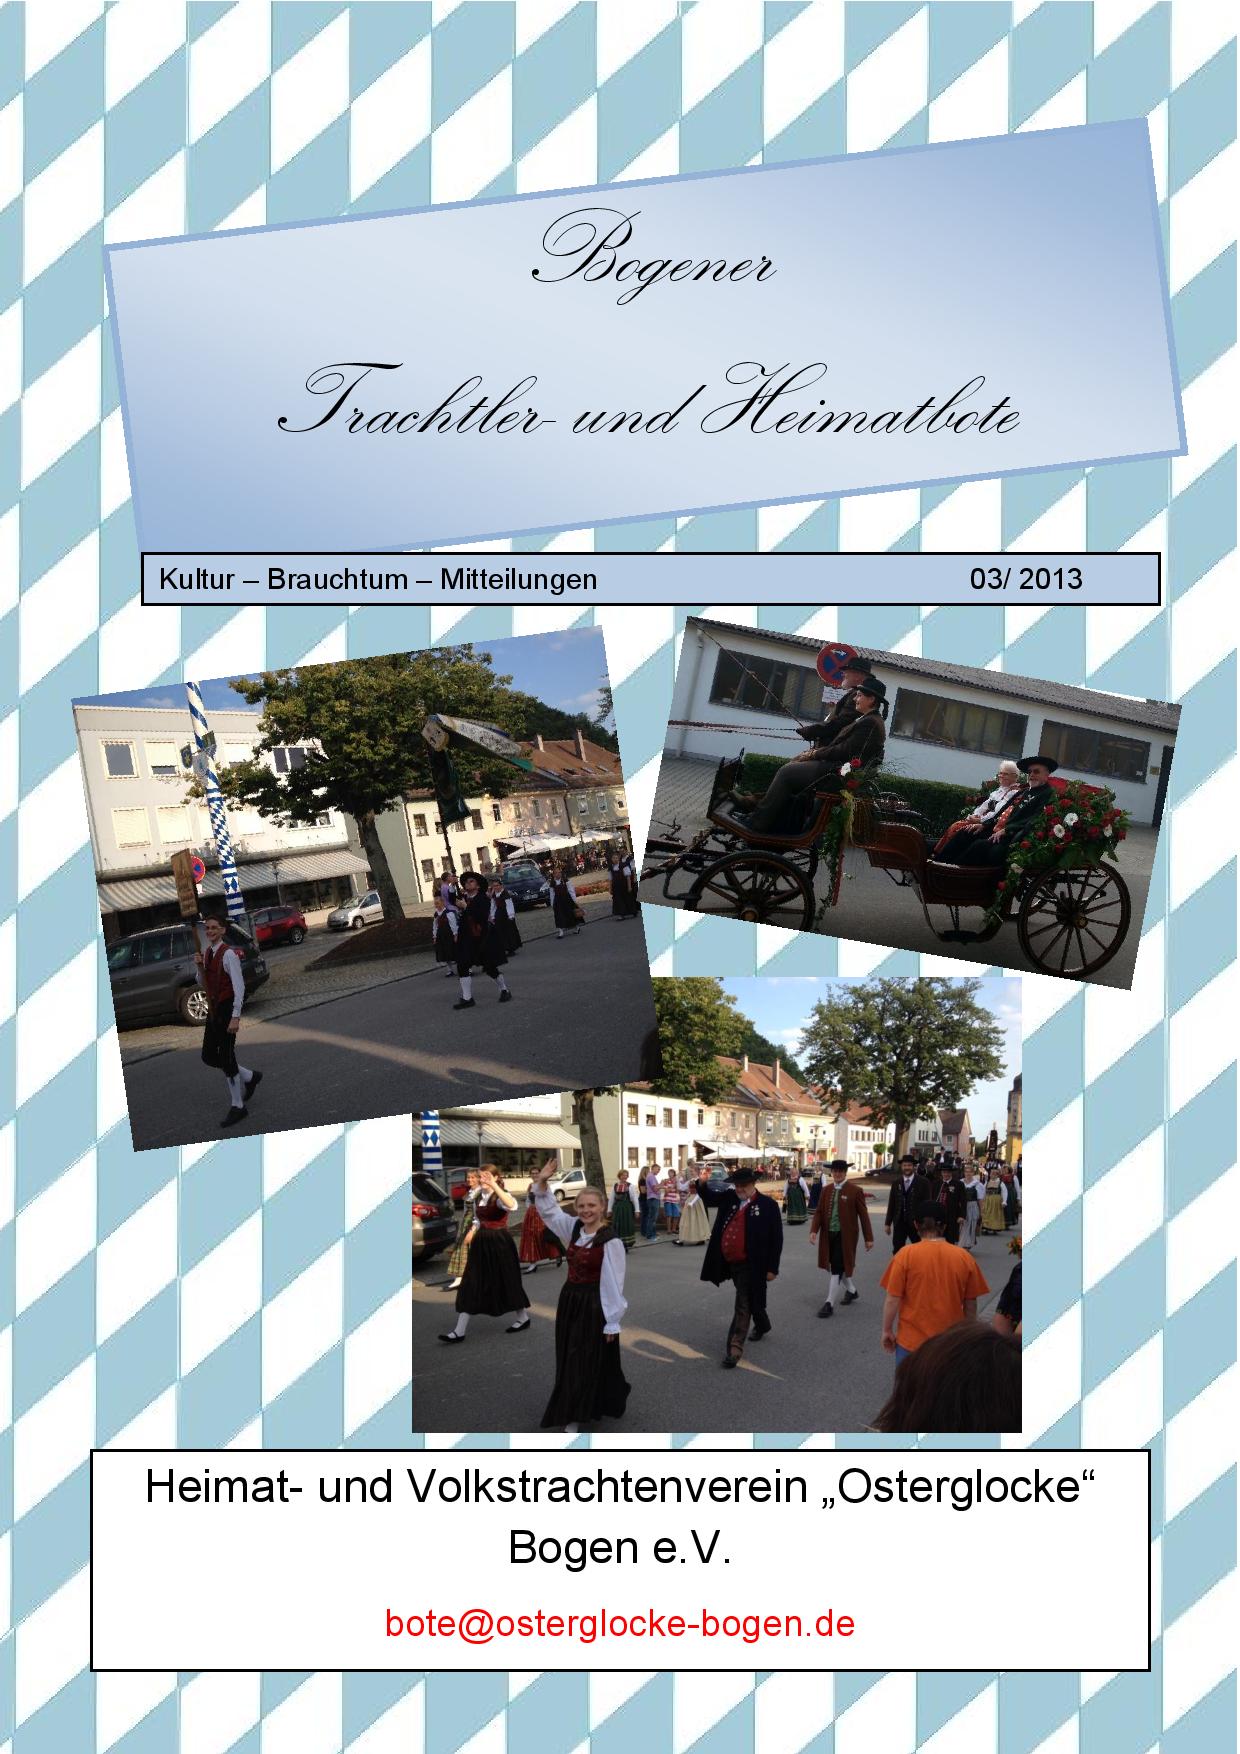 Bogener Trachtler- und Heimatbote 03/2013 (Deckblatt)